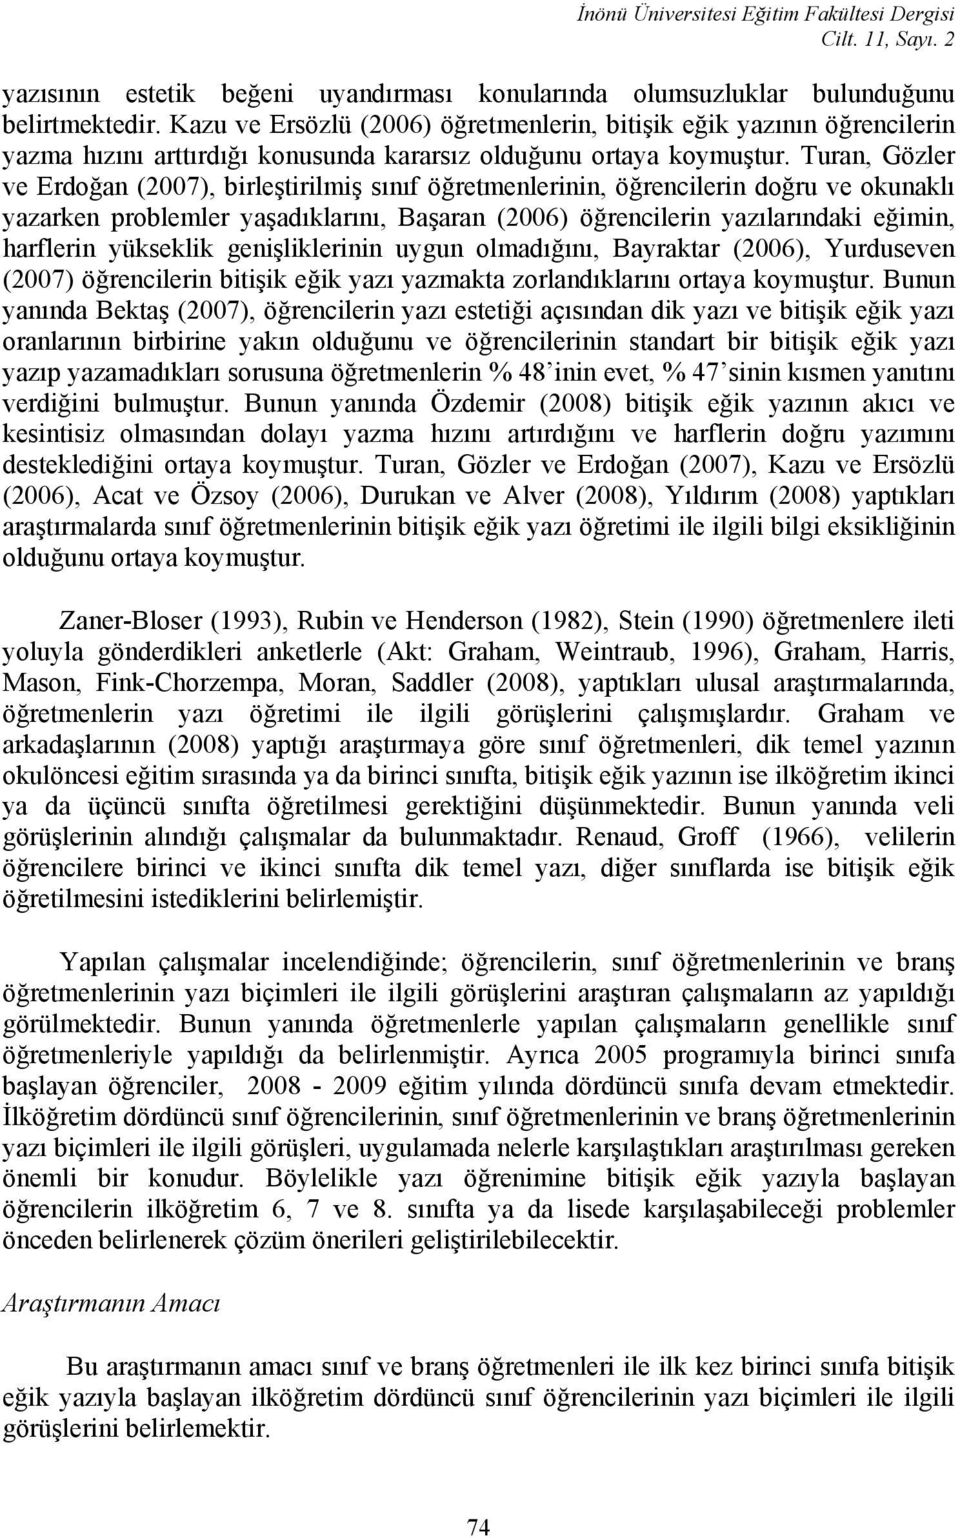 Turan, Gözler ve Erdoğan (2007), birleştirilmiş sınıf öğretmenlerinin, öğrencilerin doğru ve okunaklı yazarken problemler yaşadıklarını, Başaran (2006) öğrencilerin yazılarındaki eğimin, harflerin